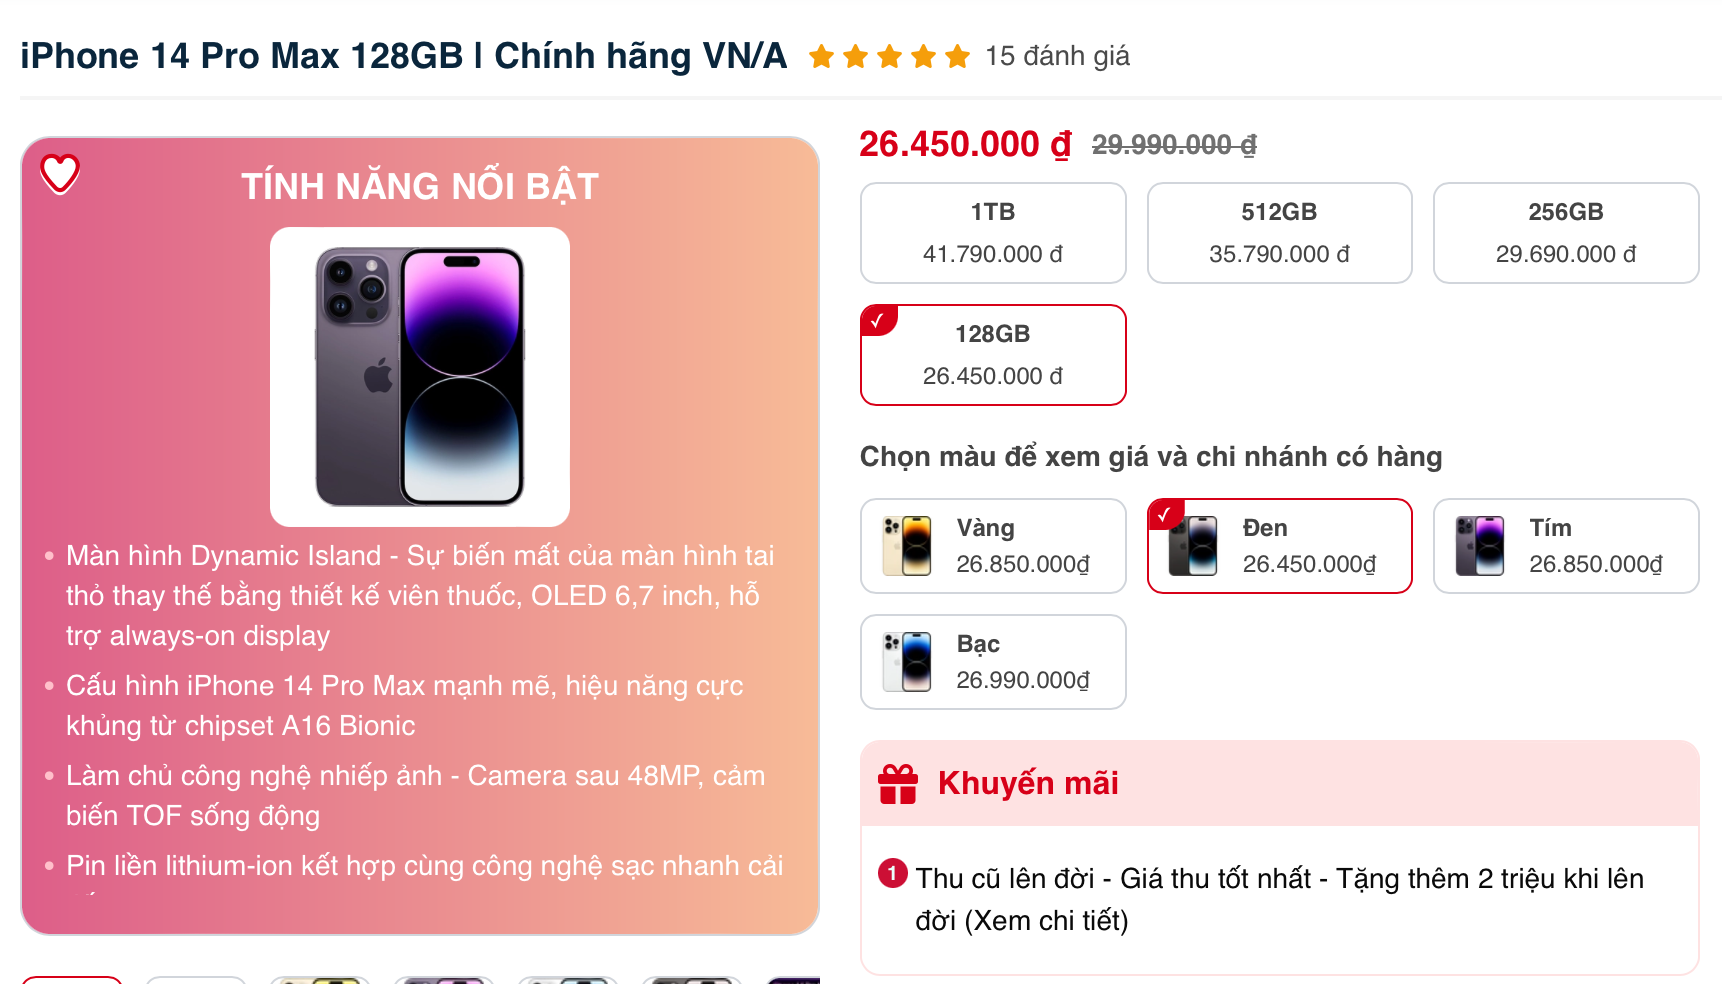 Giá iPhone 14 Pro Max tại Việt Nam lại thiết lập đáy mới: Lỗ cả triệu đồng chỉ sau vài tuần - Ảnh 1.